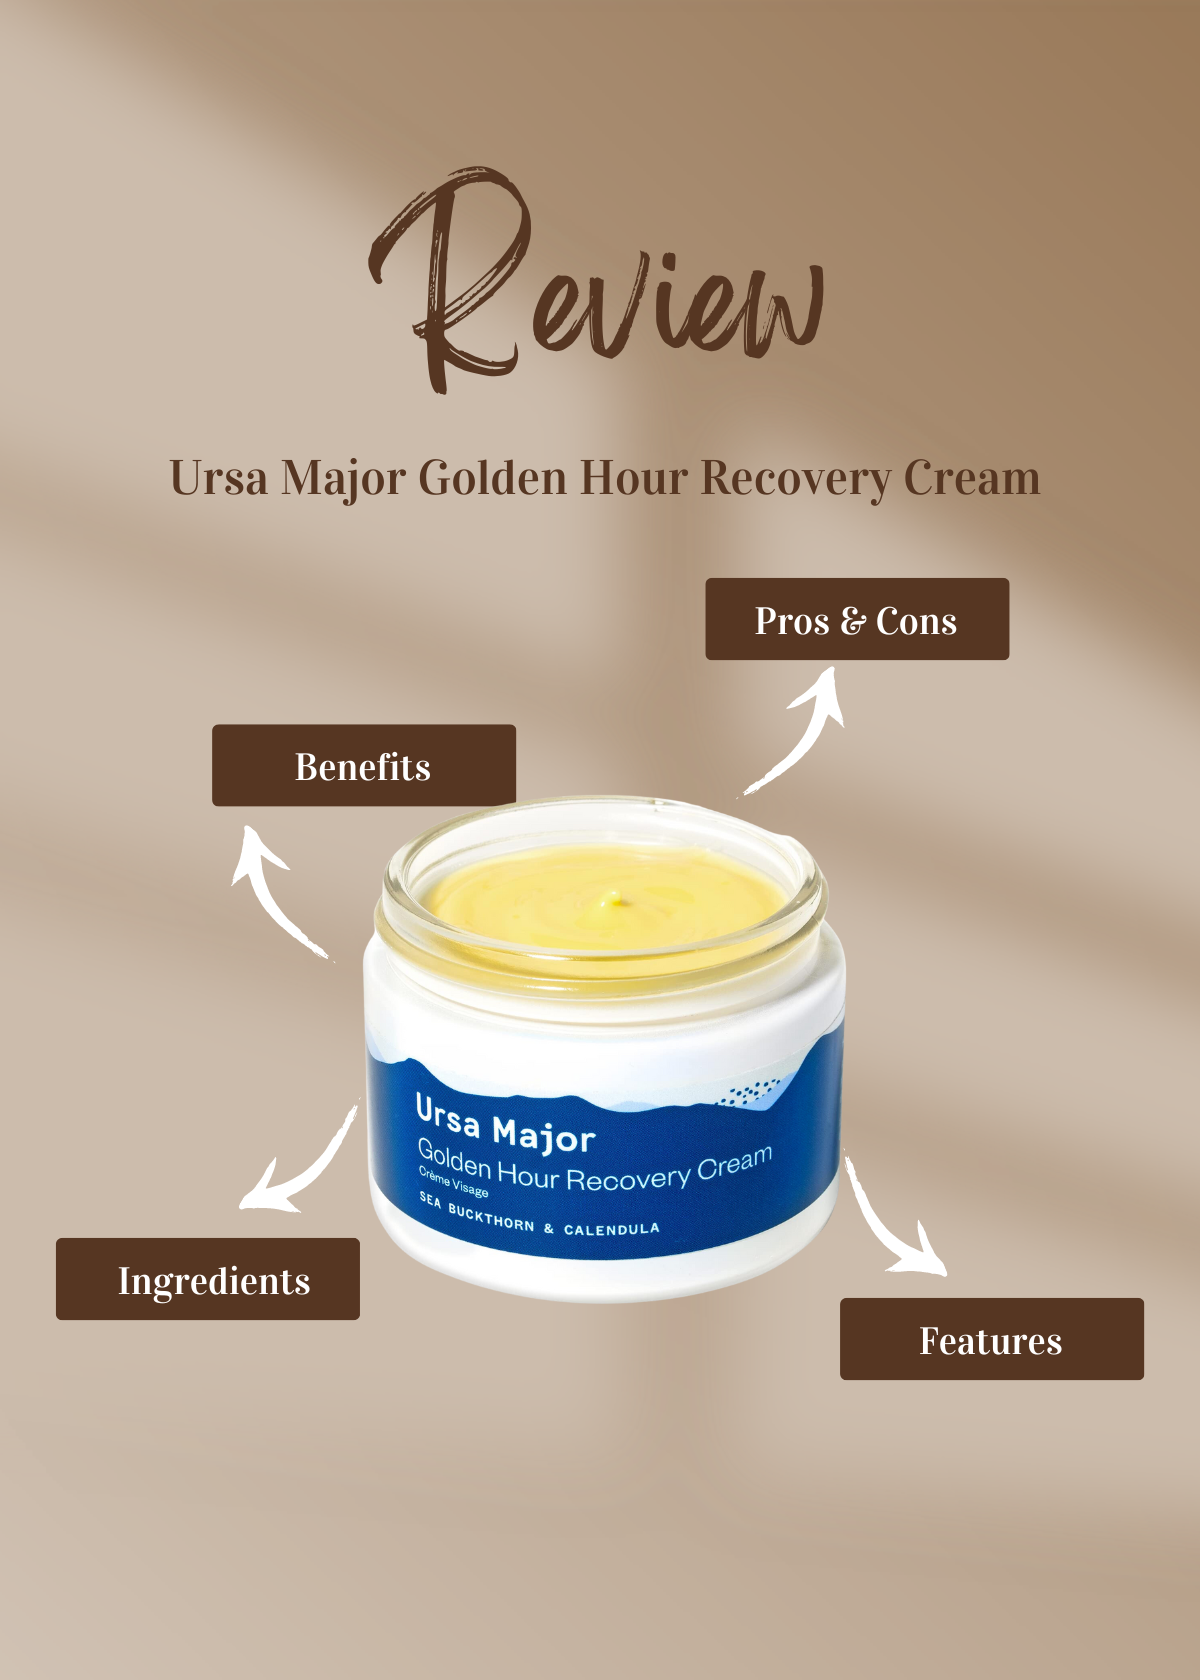 Ursa Major Golden Hour Recovery Cream Review